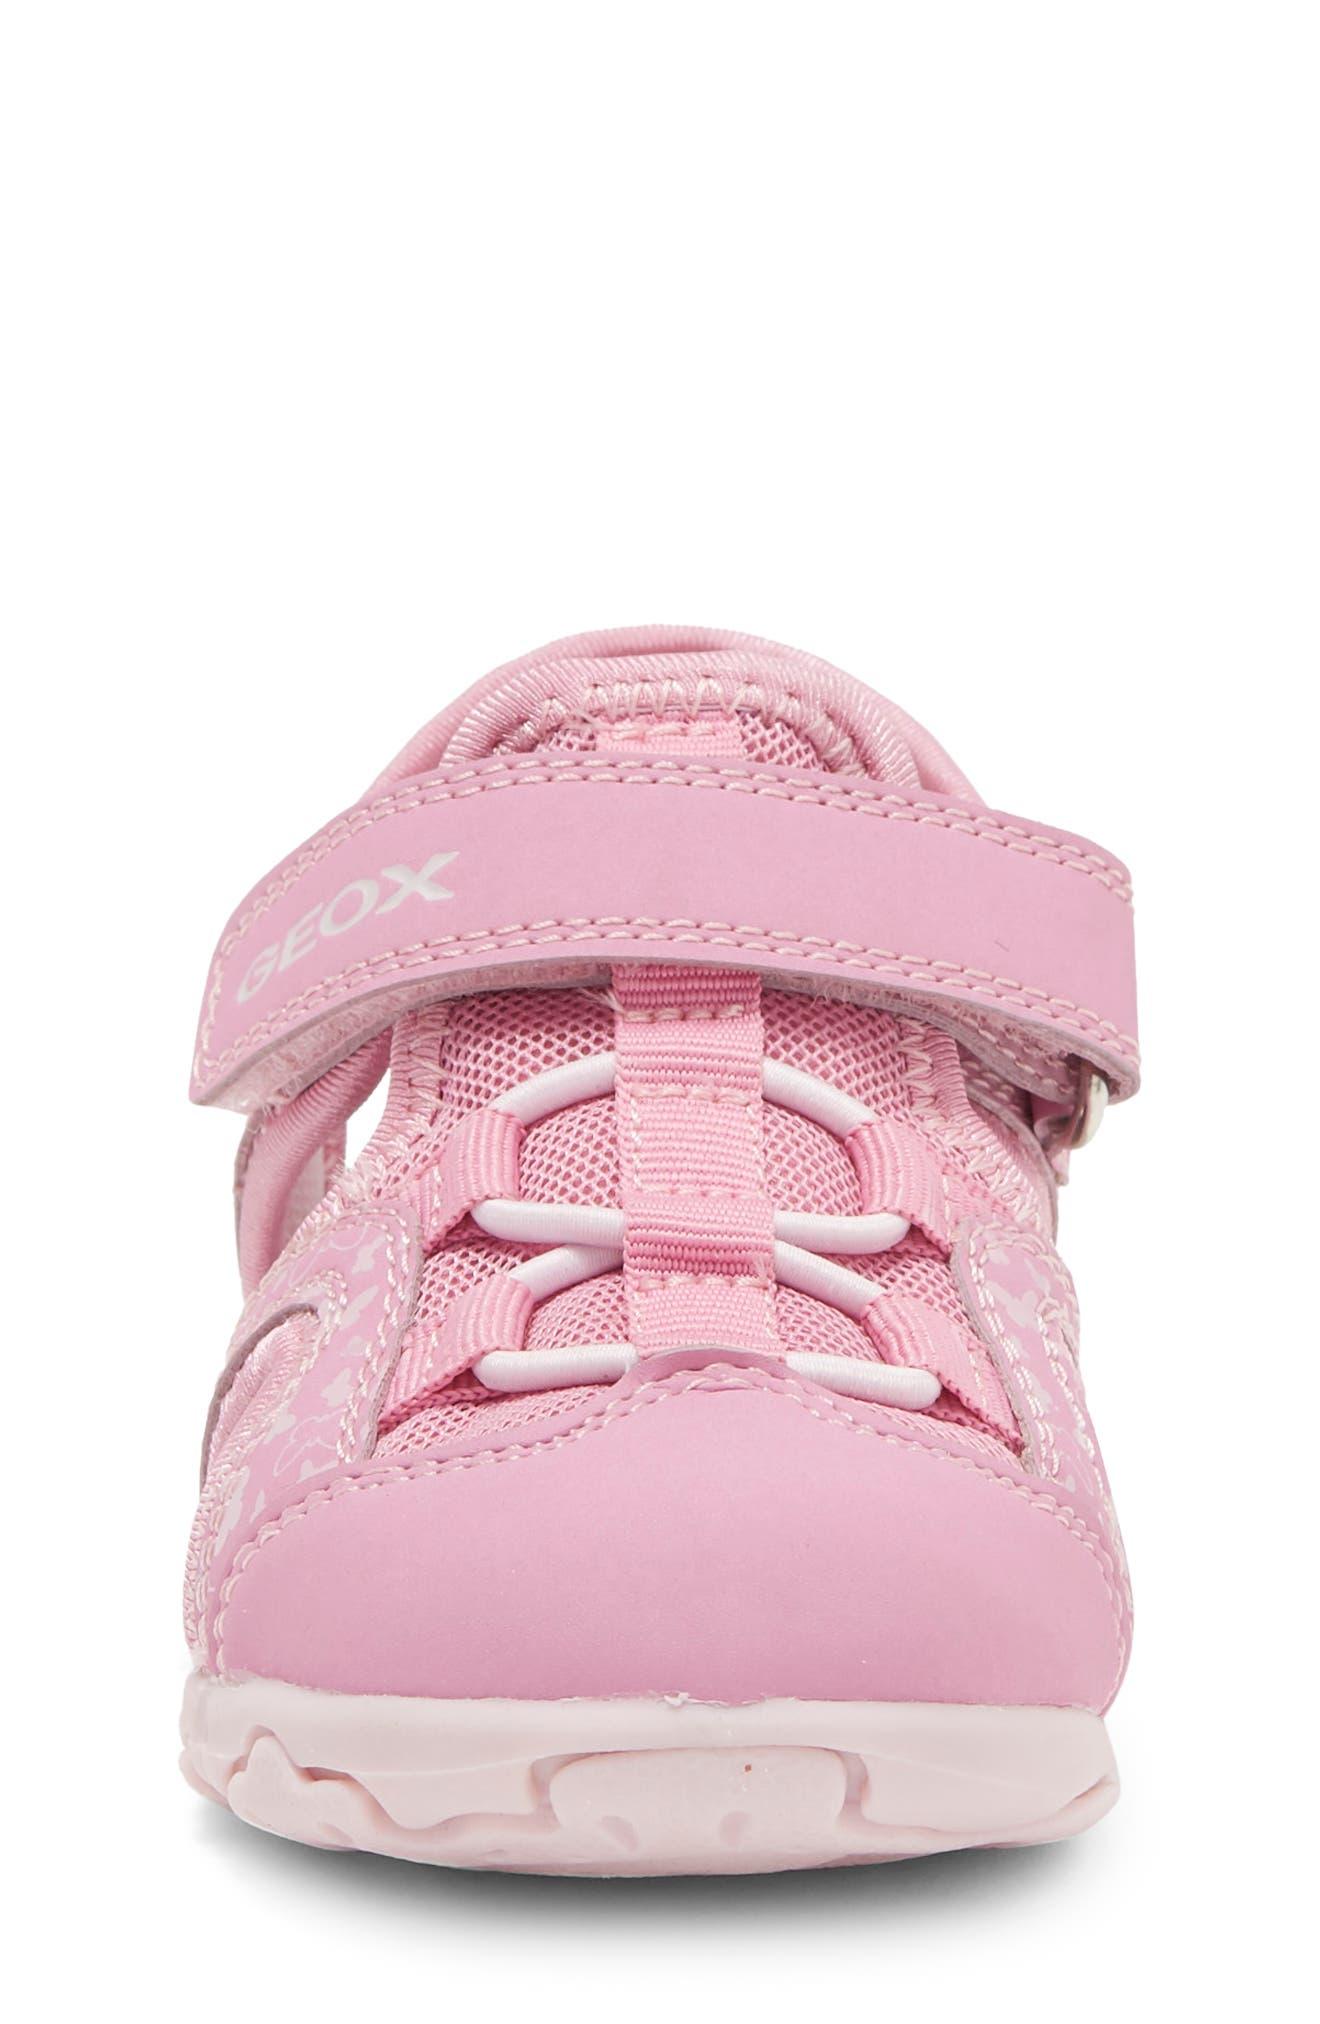 Geox Kids Flaffee Sandal in Pink | Lyst